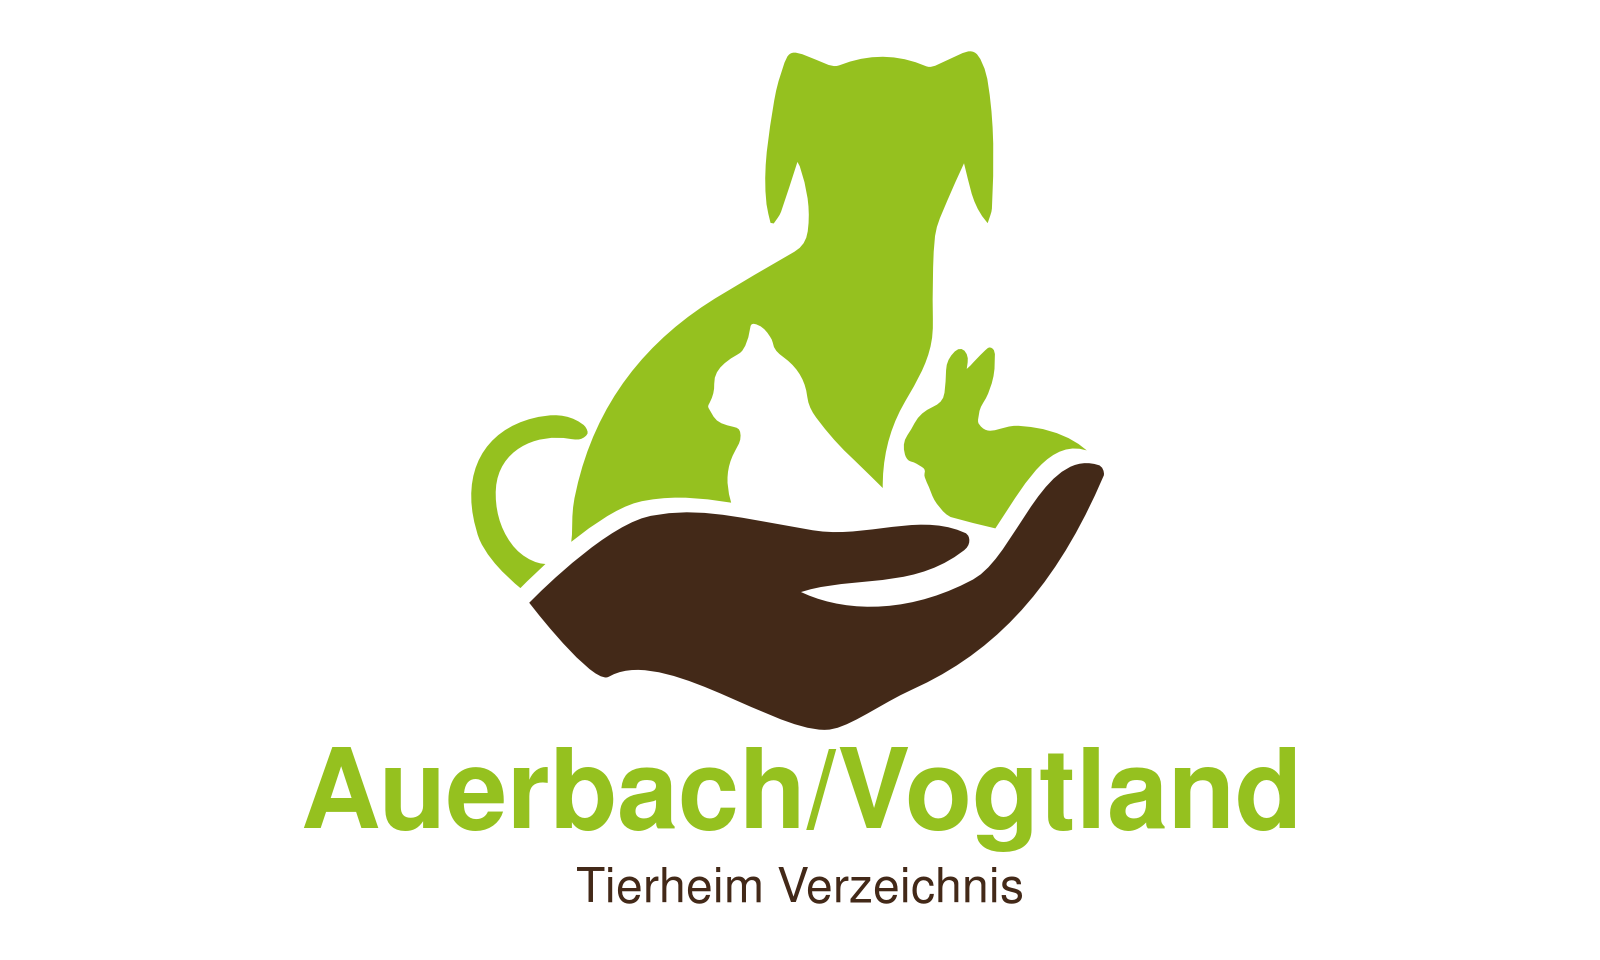 Tierheim Auerbach/Vogtland